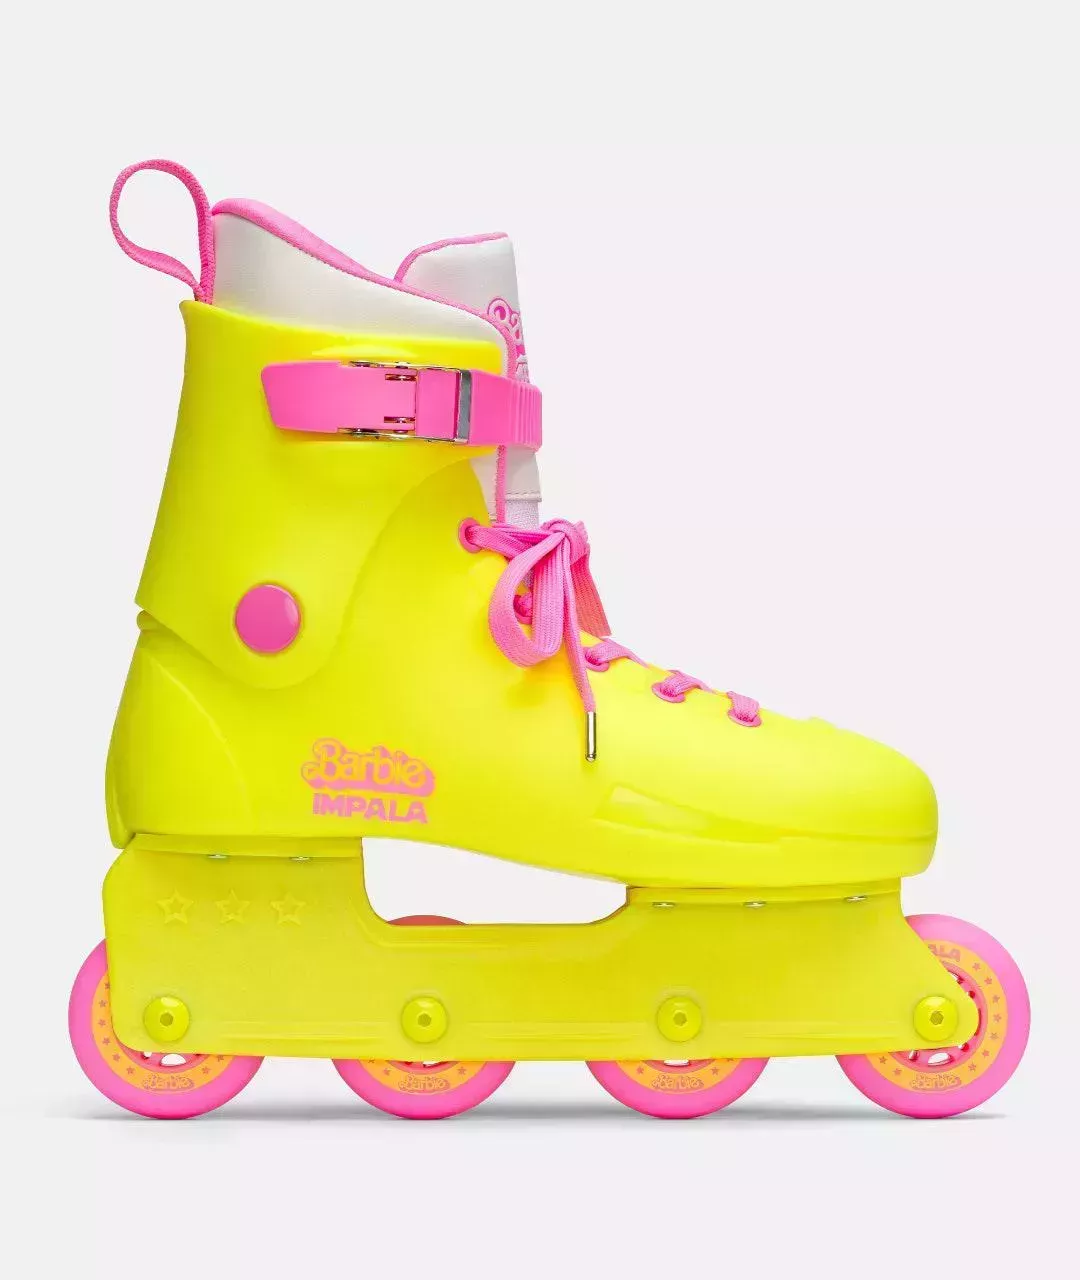 Pronto podrás comprar los patines de Barbie